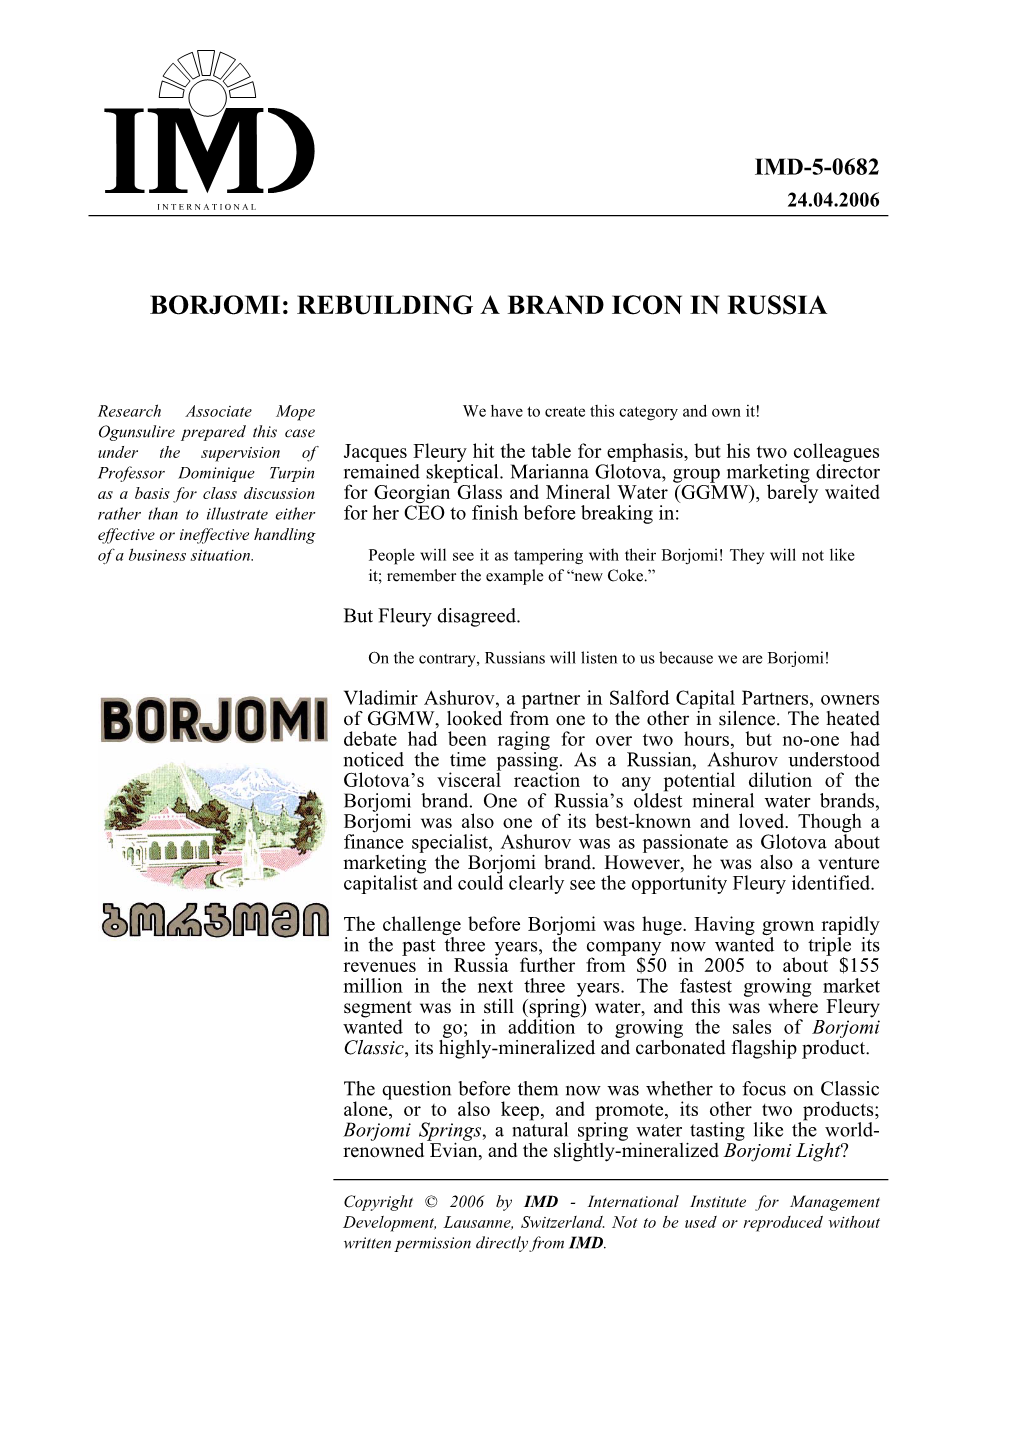 Borjomi: Rebuilding a Brand Icon in Russia